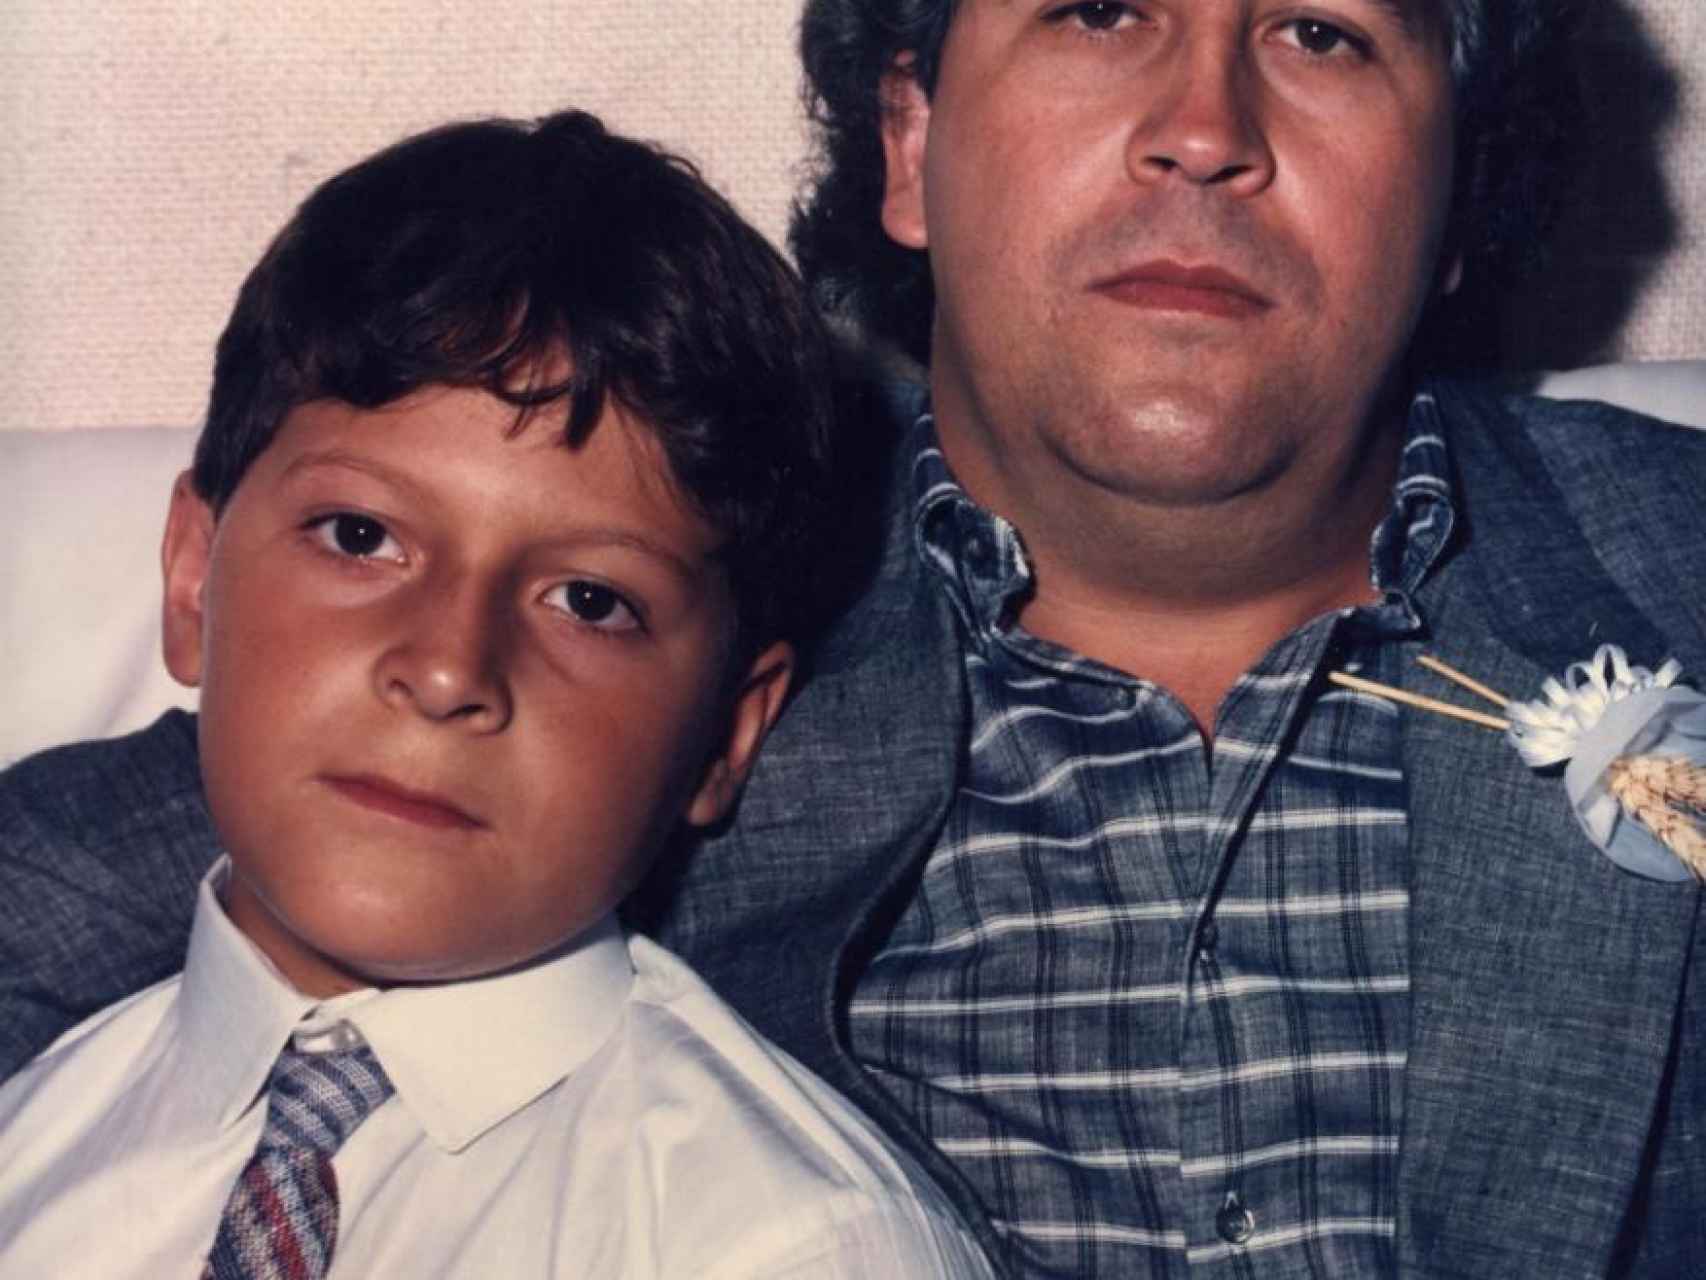 El pequeño Sebastián Marroquín, junto a su padre, el narcotraficante Pablo Escobar.